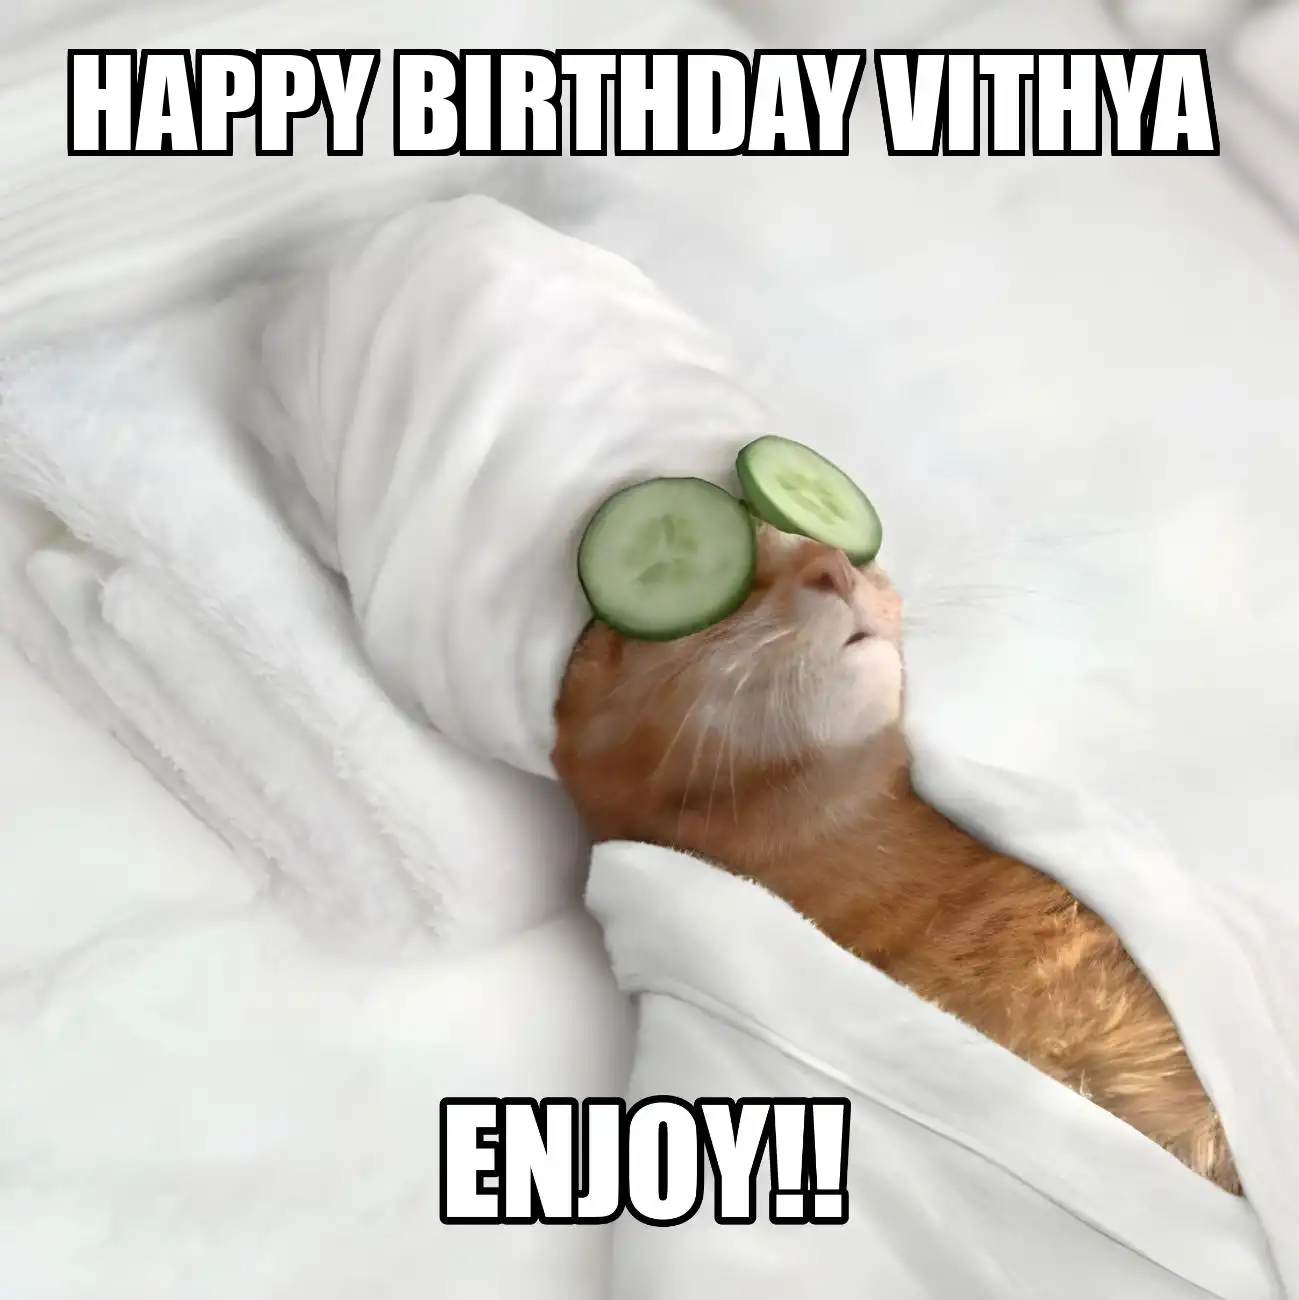 Happy Birthday Vithya Enjoy Cat Meme